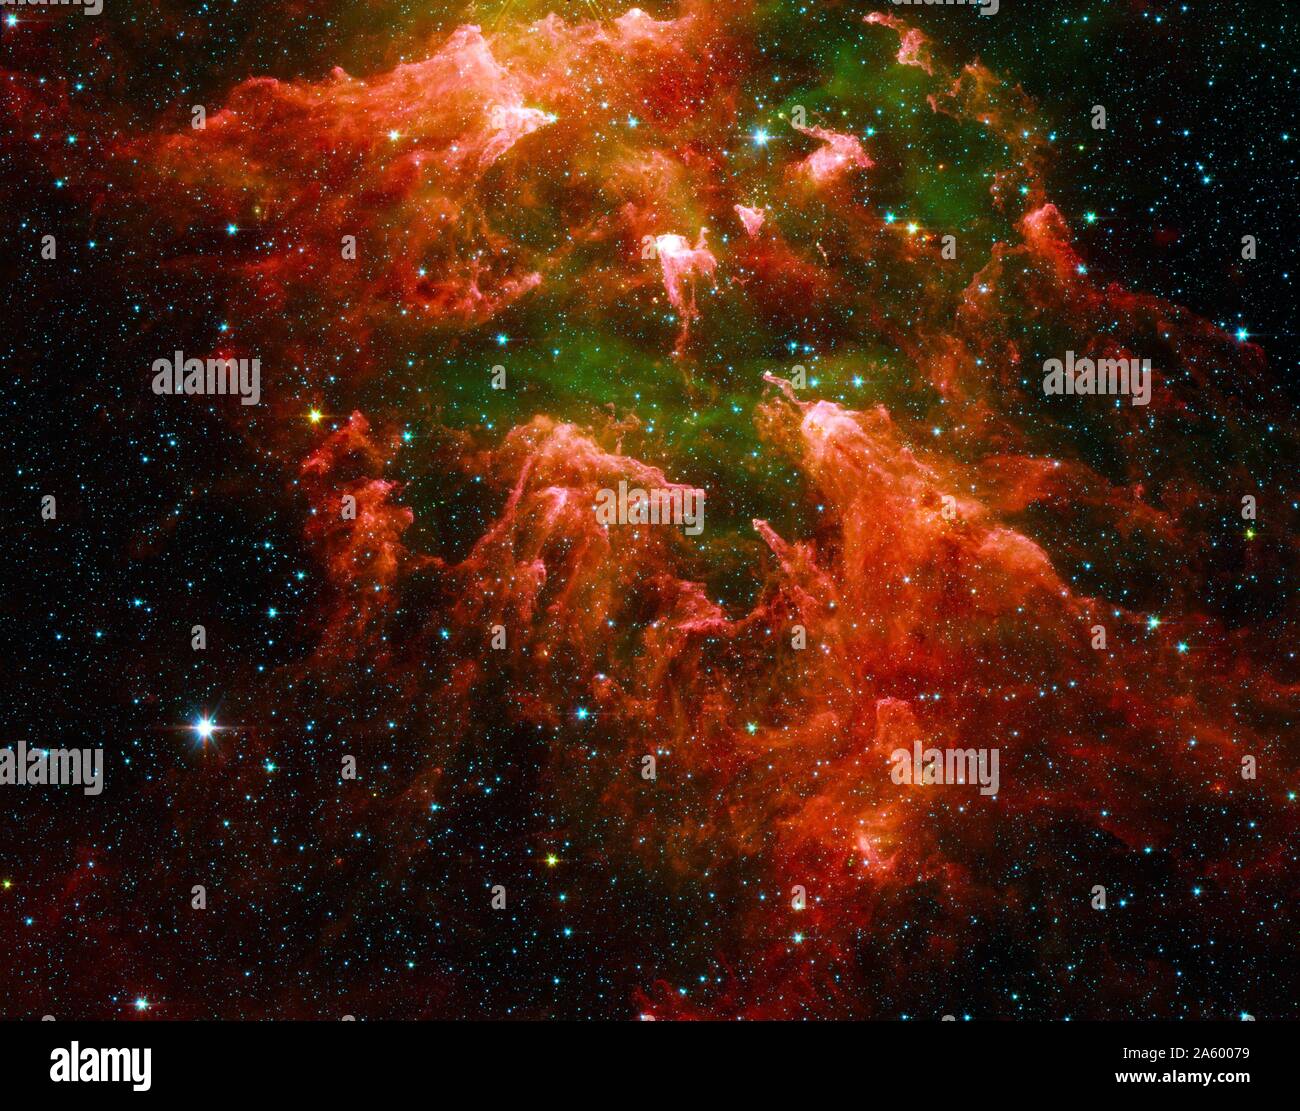 Pilier sud de la région d'étoiles appelé la nébuleuse Carina, prise par le télescope spatial Spitzer. Datée 2003 Banque D'Images